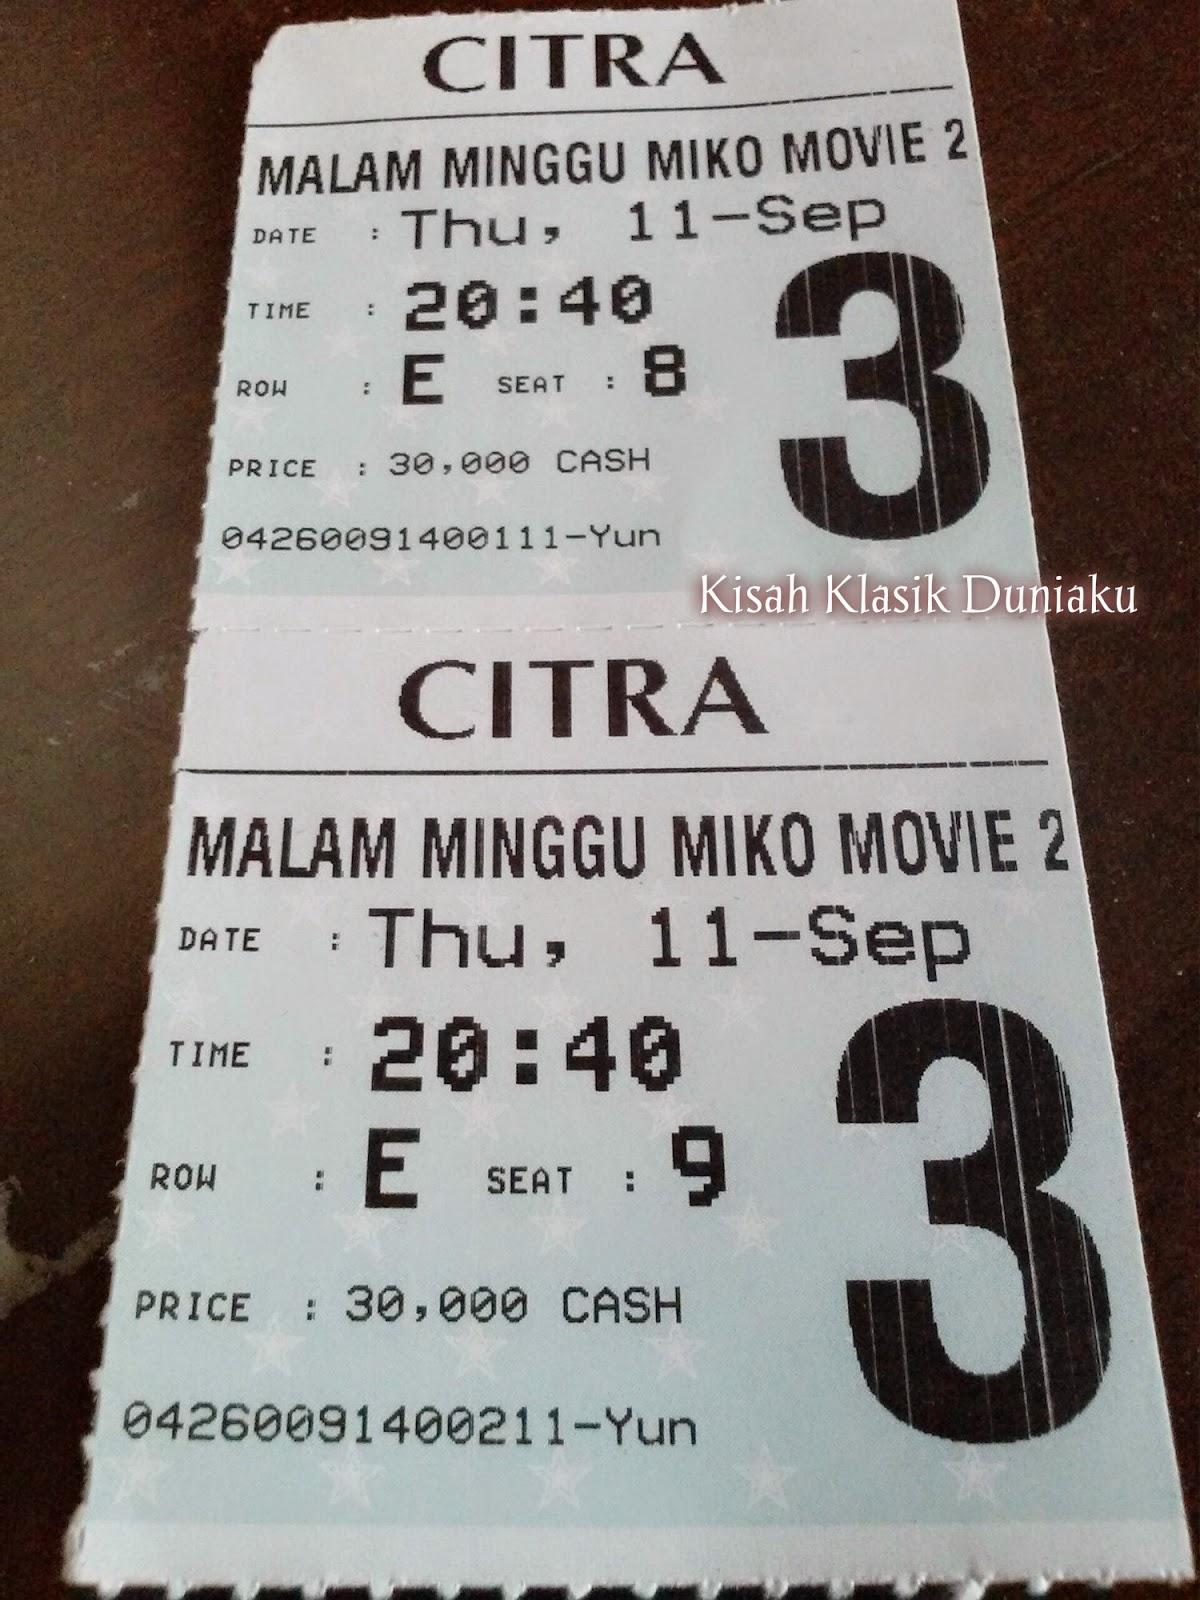 Kisah Klasik Duniaku: [Review] : "Malam Minggu Miko Movie"